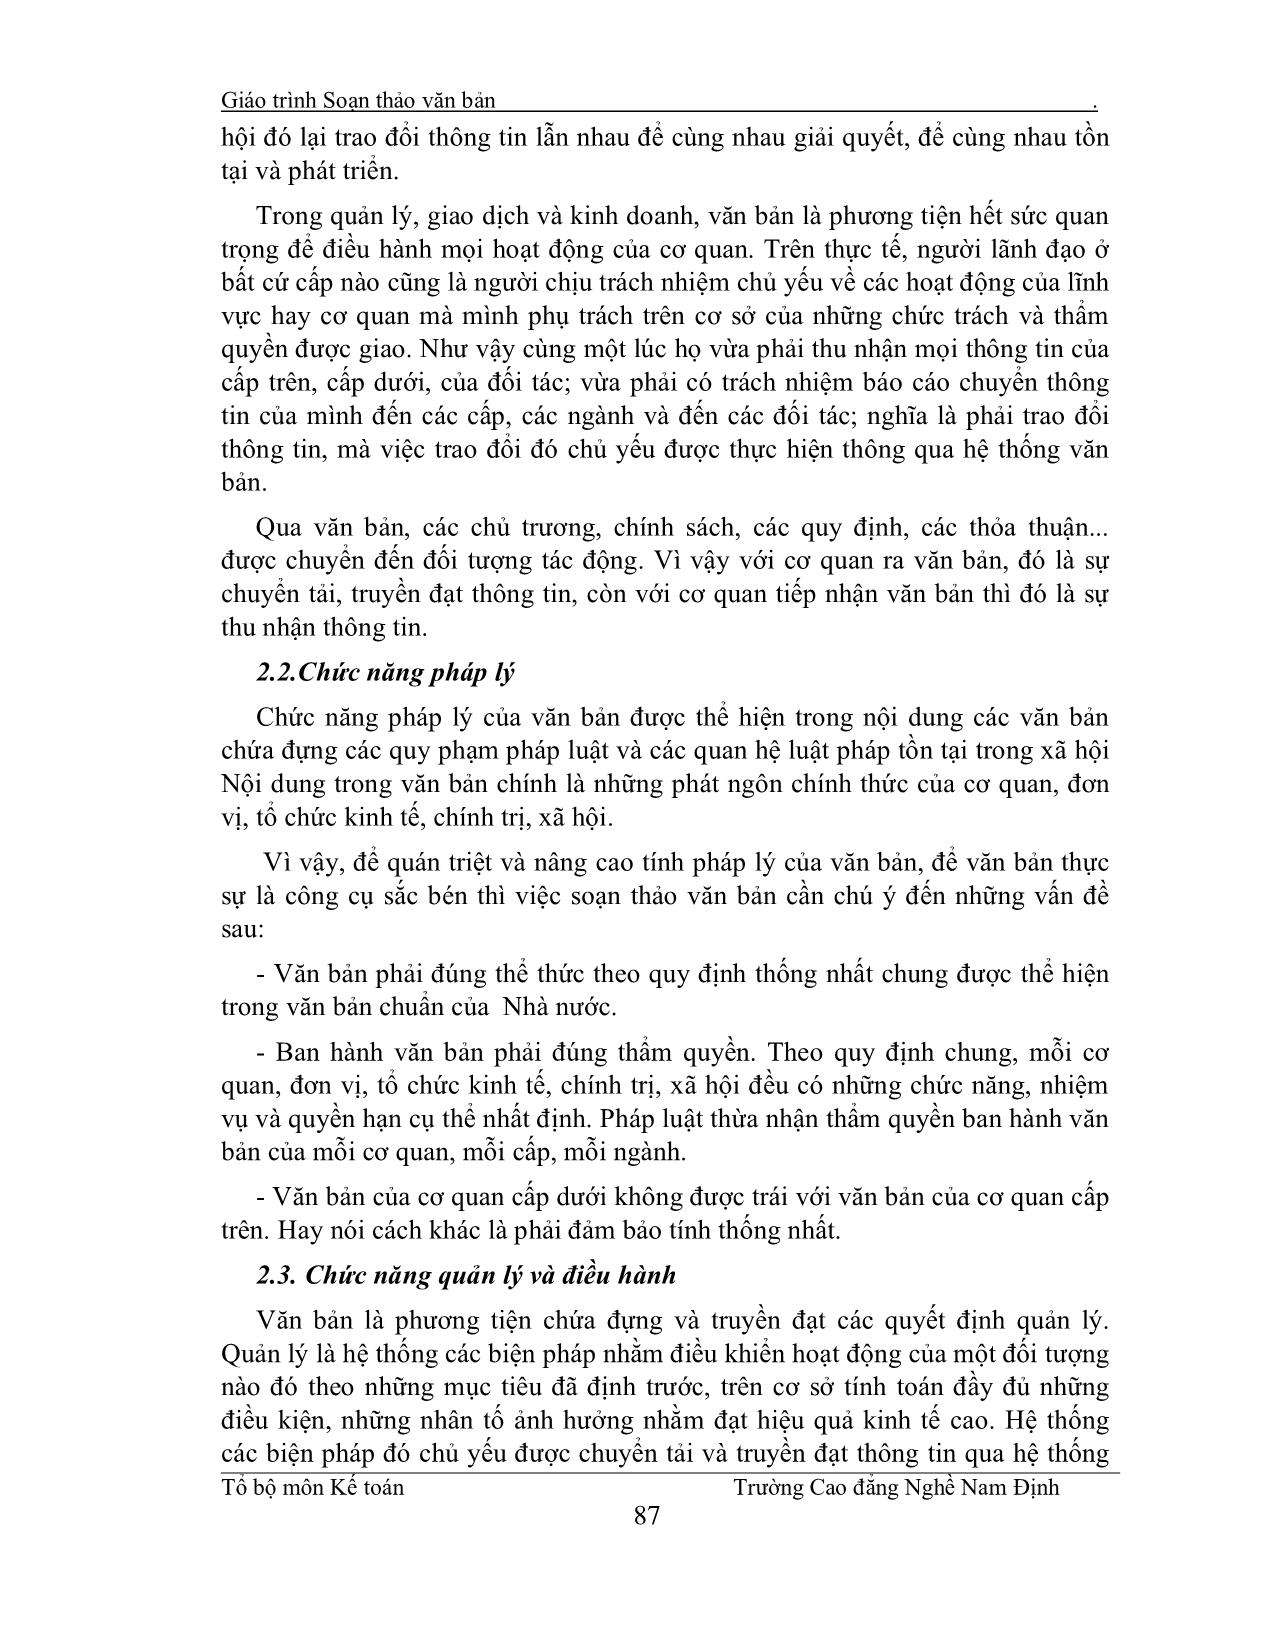 Giáo trình Soạn thảo văn bản (Phần 1) trang 2